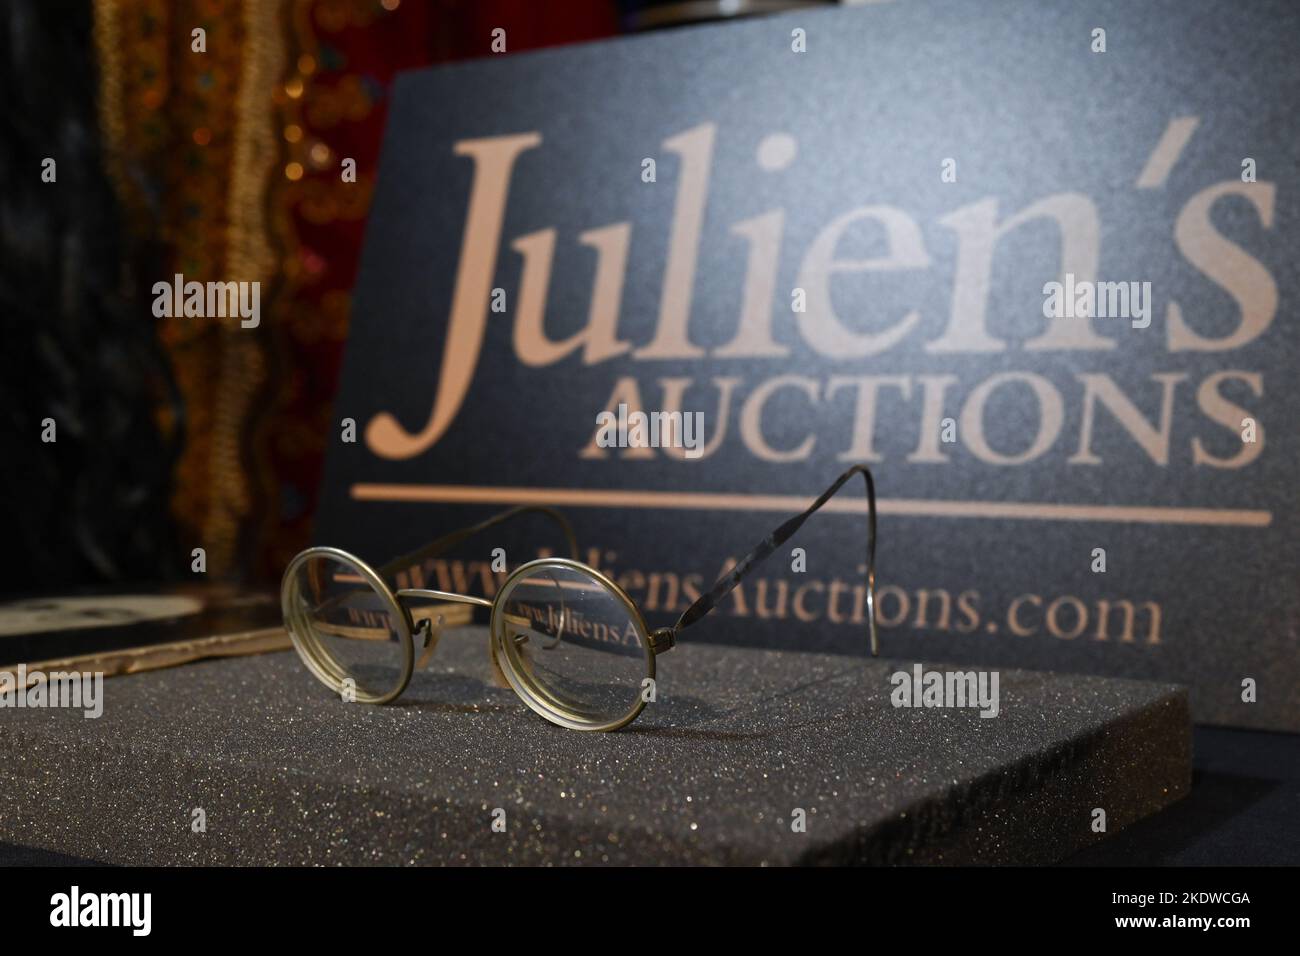 Ein Paar goldfarbener, fotopassender, mit Draht umrandter Gläser, die John Lennon gehört und von diesem getragen wurde und am 08. November 20 im Hard Rock Cafe Times Square ausgestellt wurde Stockfoto